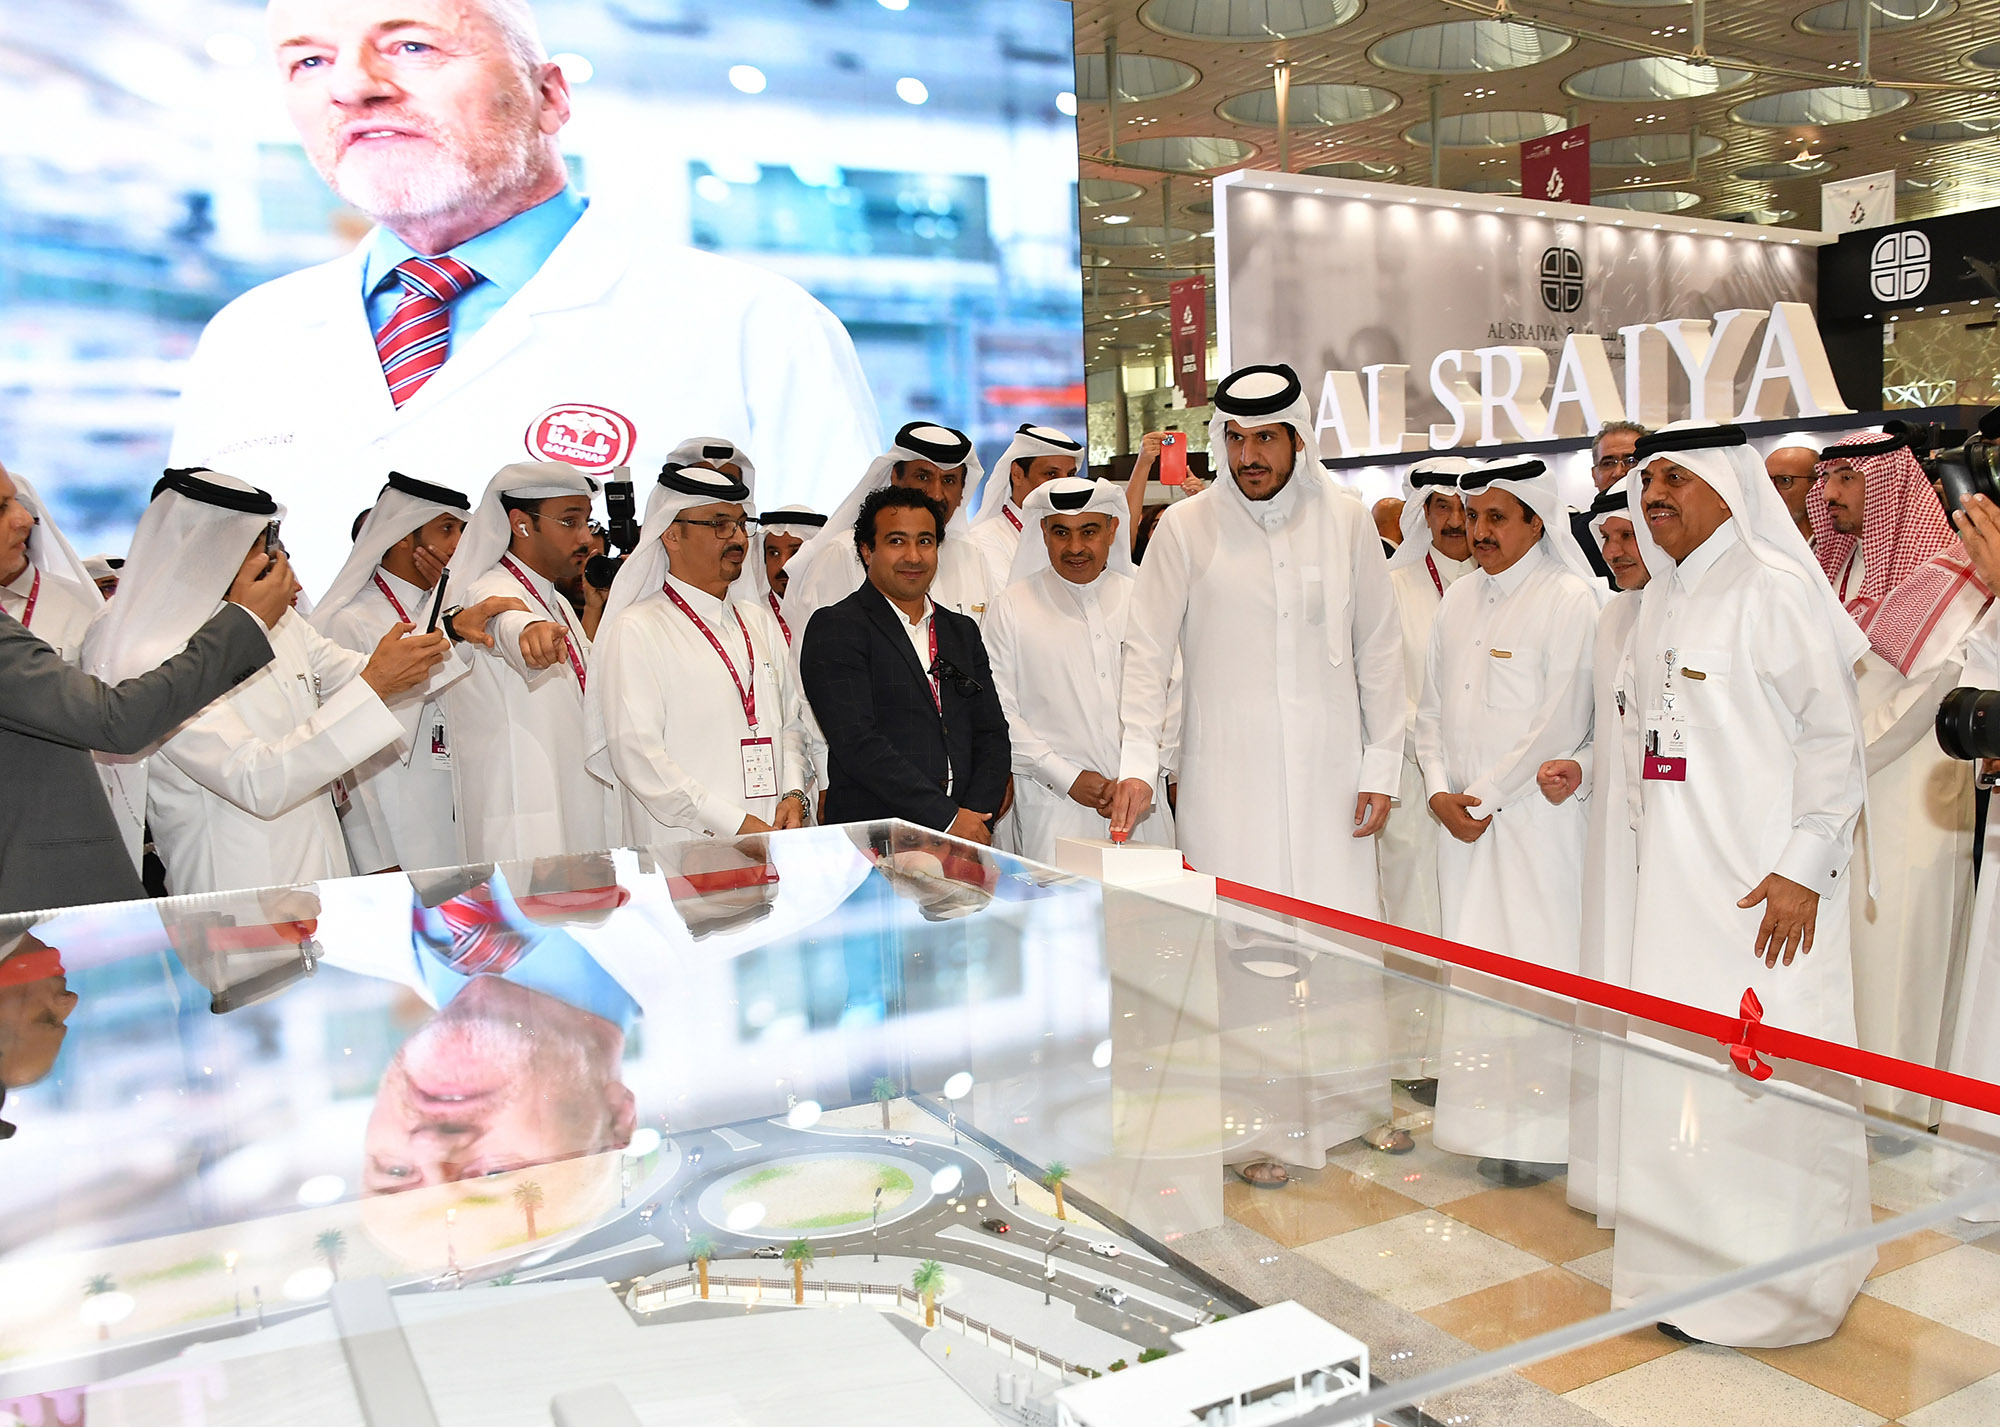 وزارة التجارة والصناعة تشارك في النسخة التاسعة من معرض  "صنع في قطر"